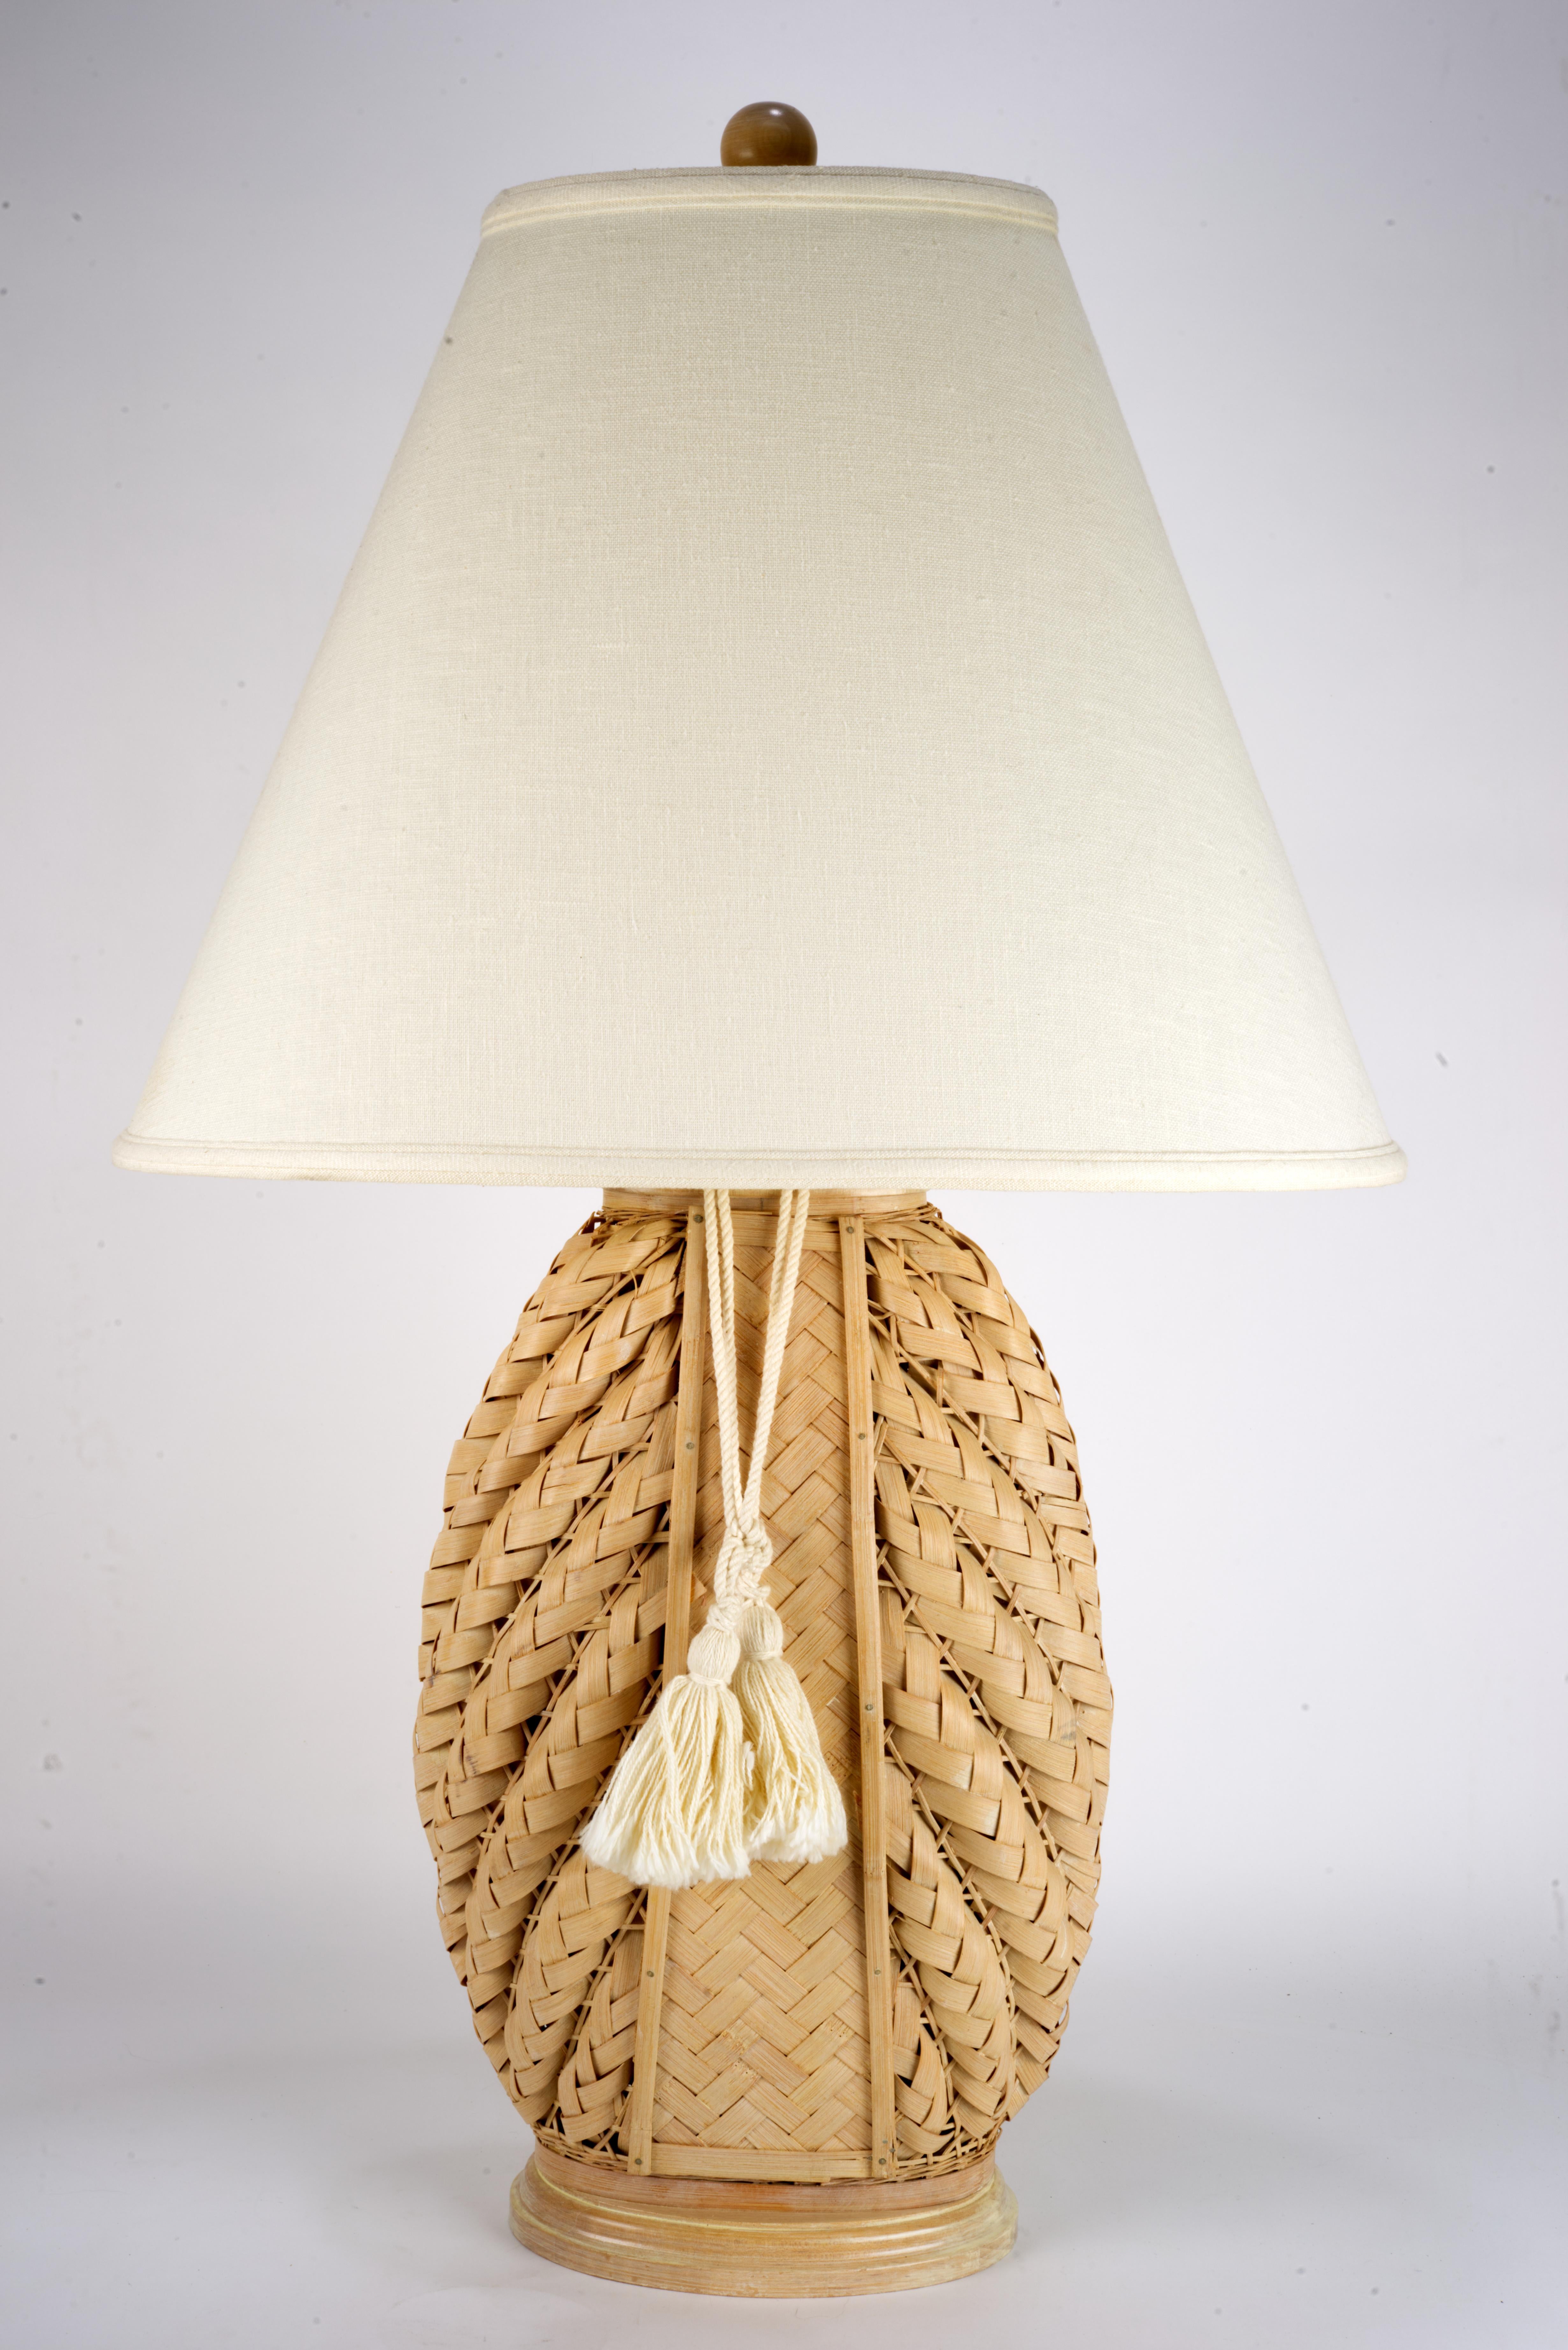  Seltene handgefertigte Rattanlampe mit leichtem Holzsockel, mit originalem Lampenschirm, Endstück und dekorativer Quaste. Ein komplexes, architektonisches Geflecht an den Seiten der Leuchte wird durch einen einfachen Parkettstreifen in der Mitte